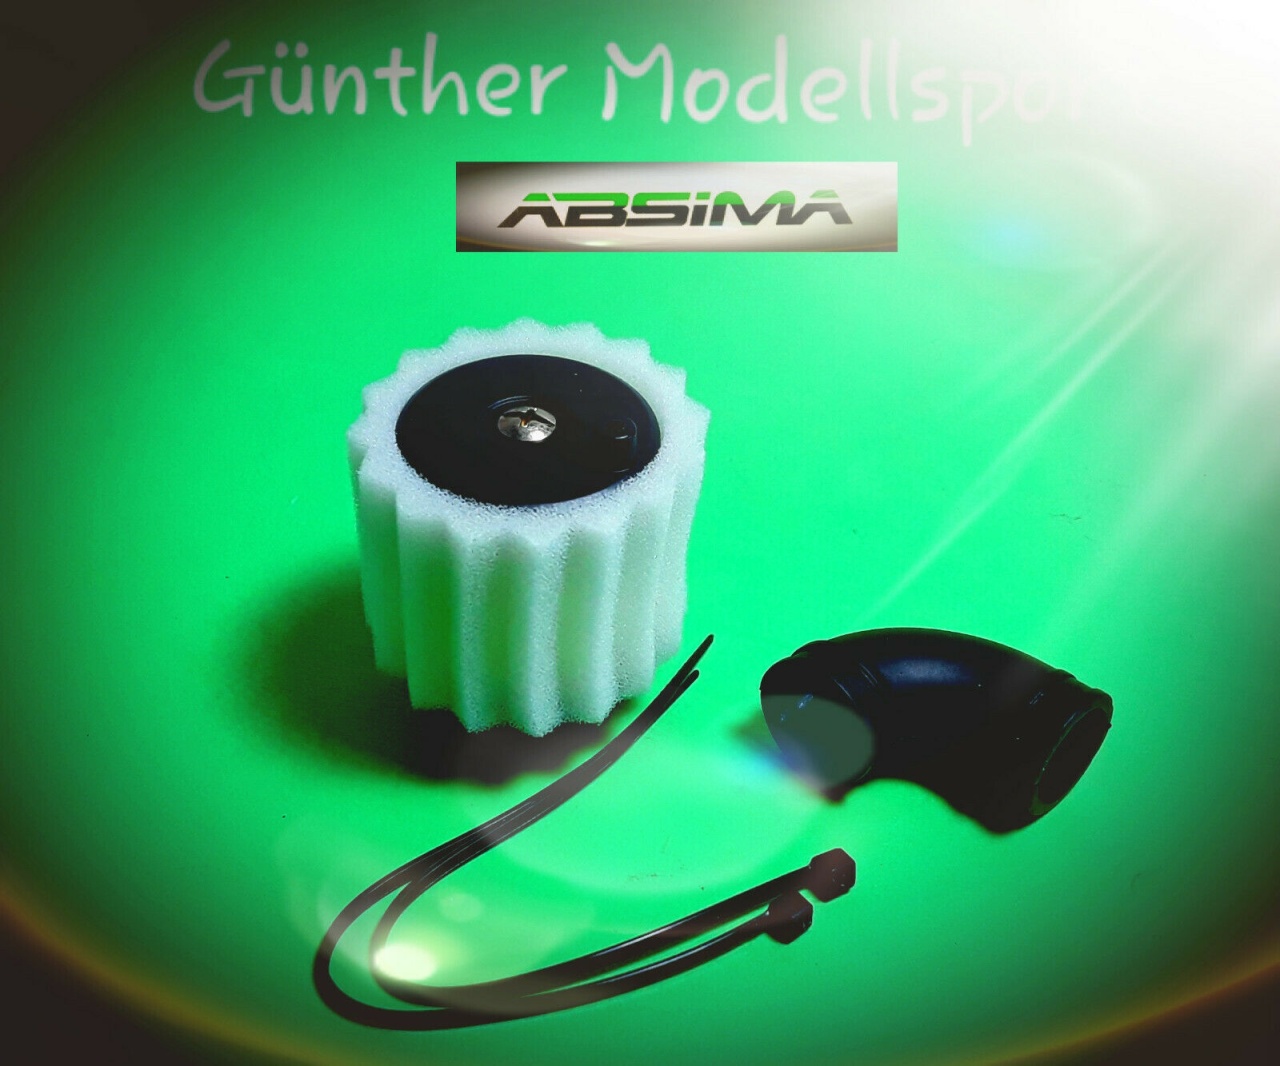 Absima Luftfilter Sternform 1:8 für 21er Motoren, 2300014